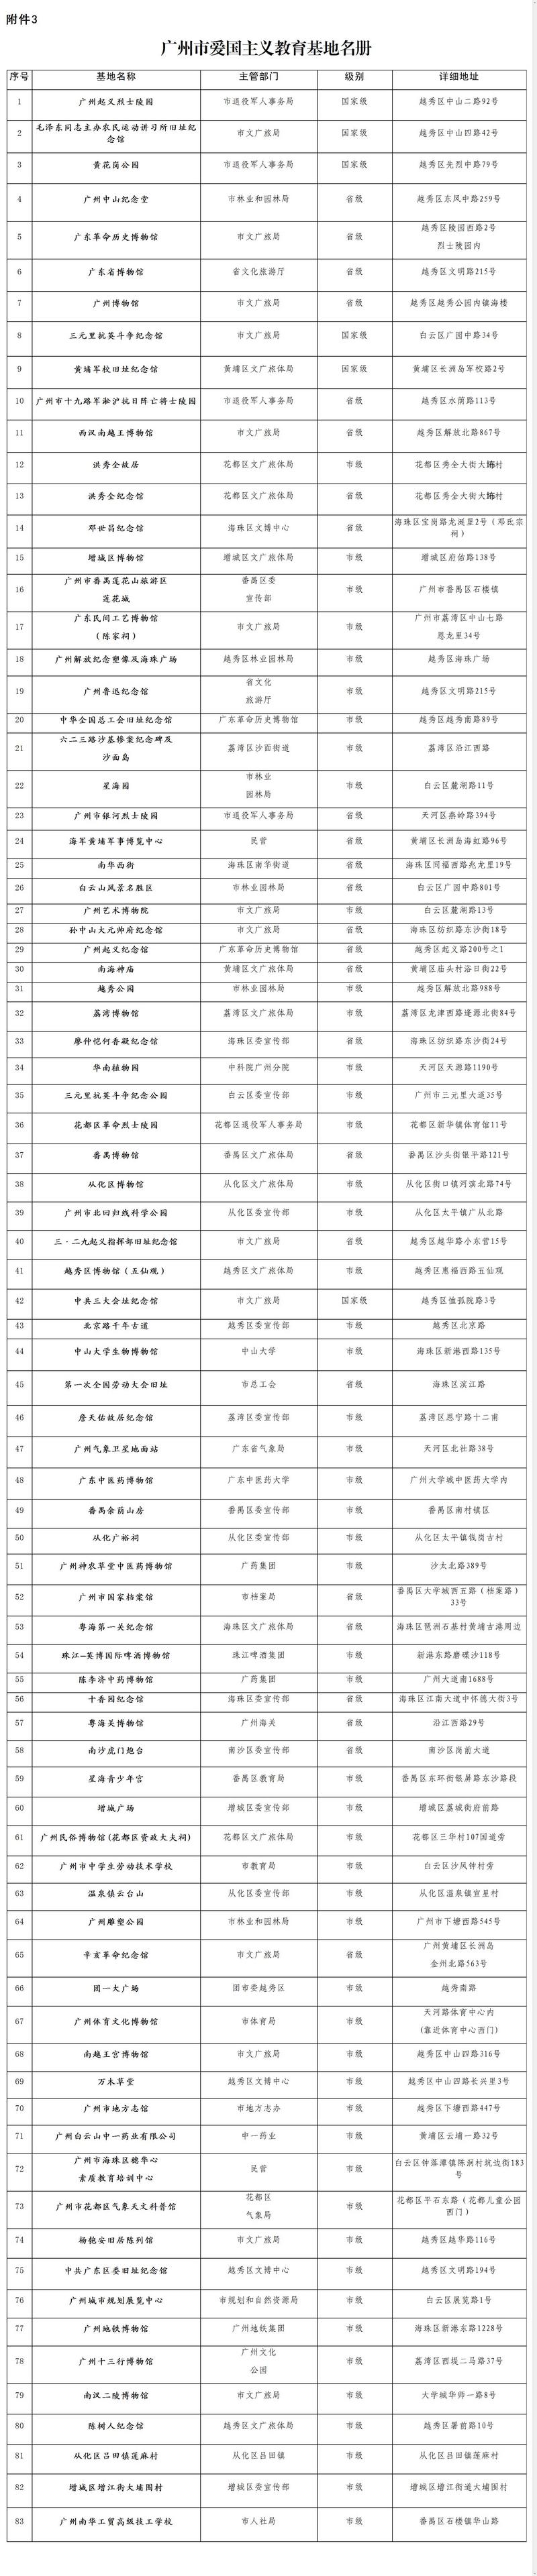 广州市爱国主义教育基地名册.jpg